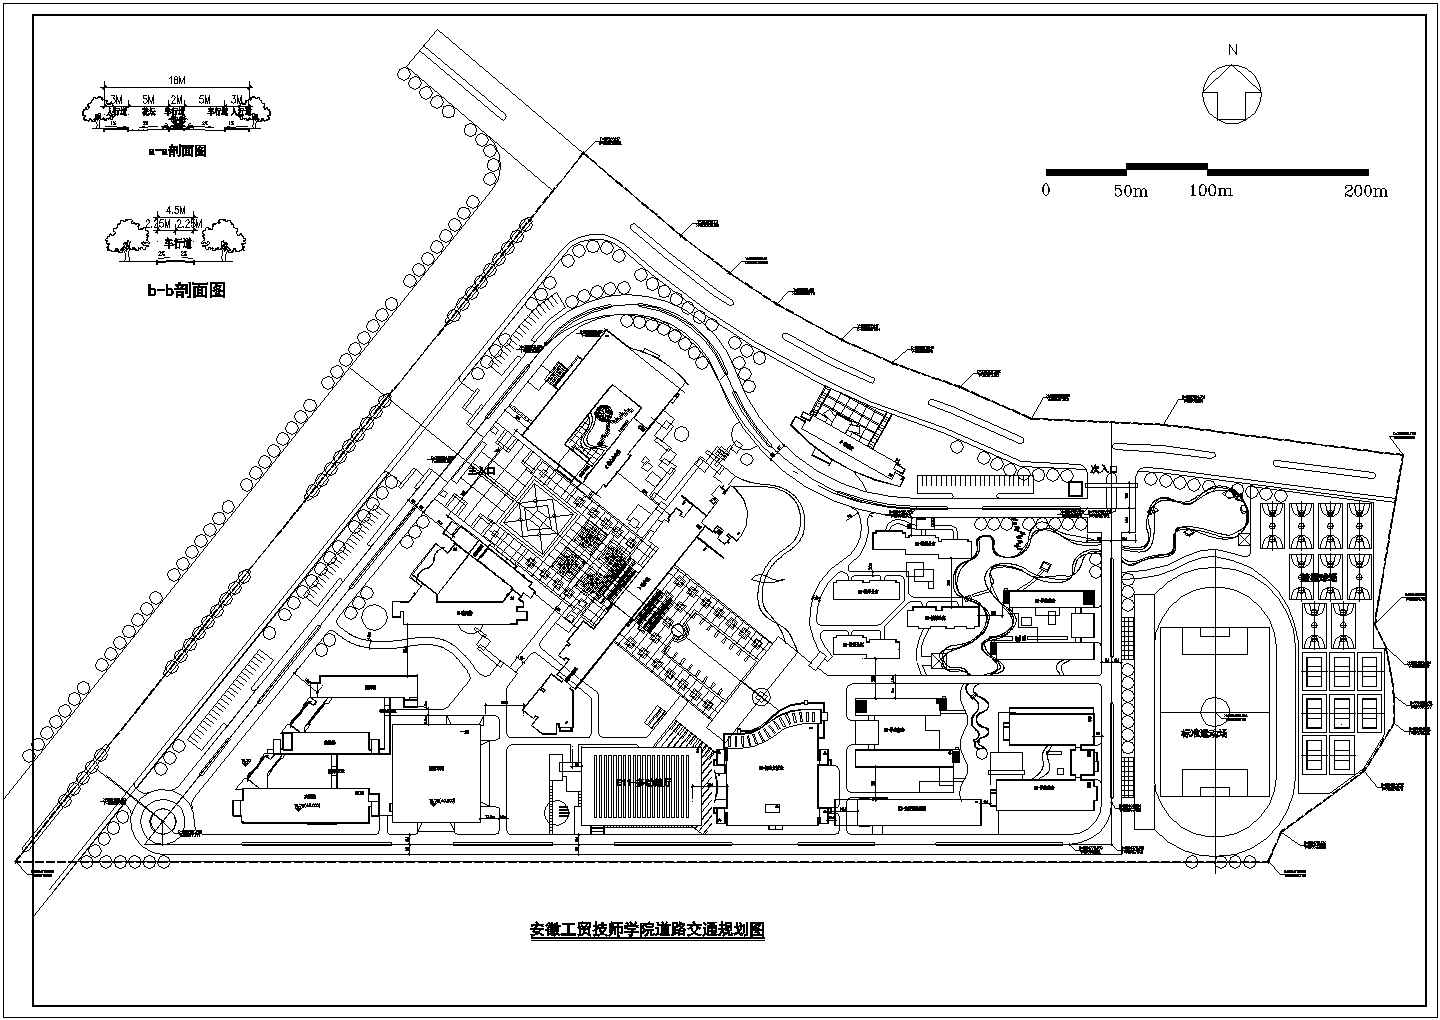 马鞍山工贸技工学校建筑施工全套完整大样图CAD总体规划